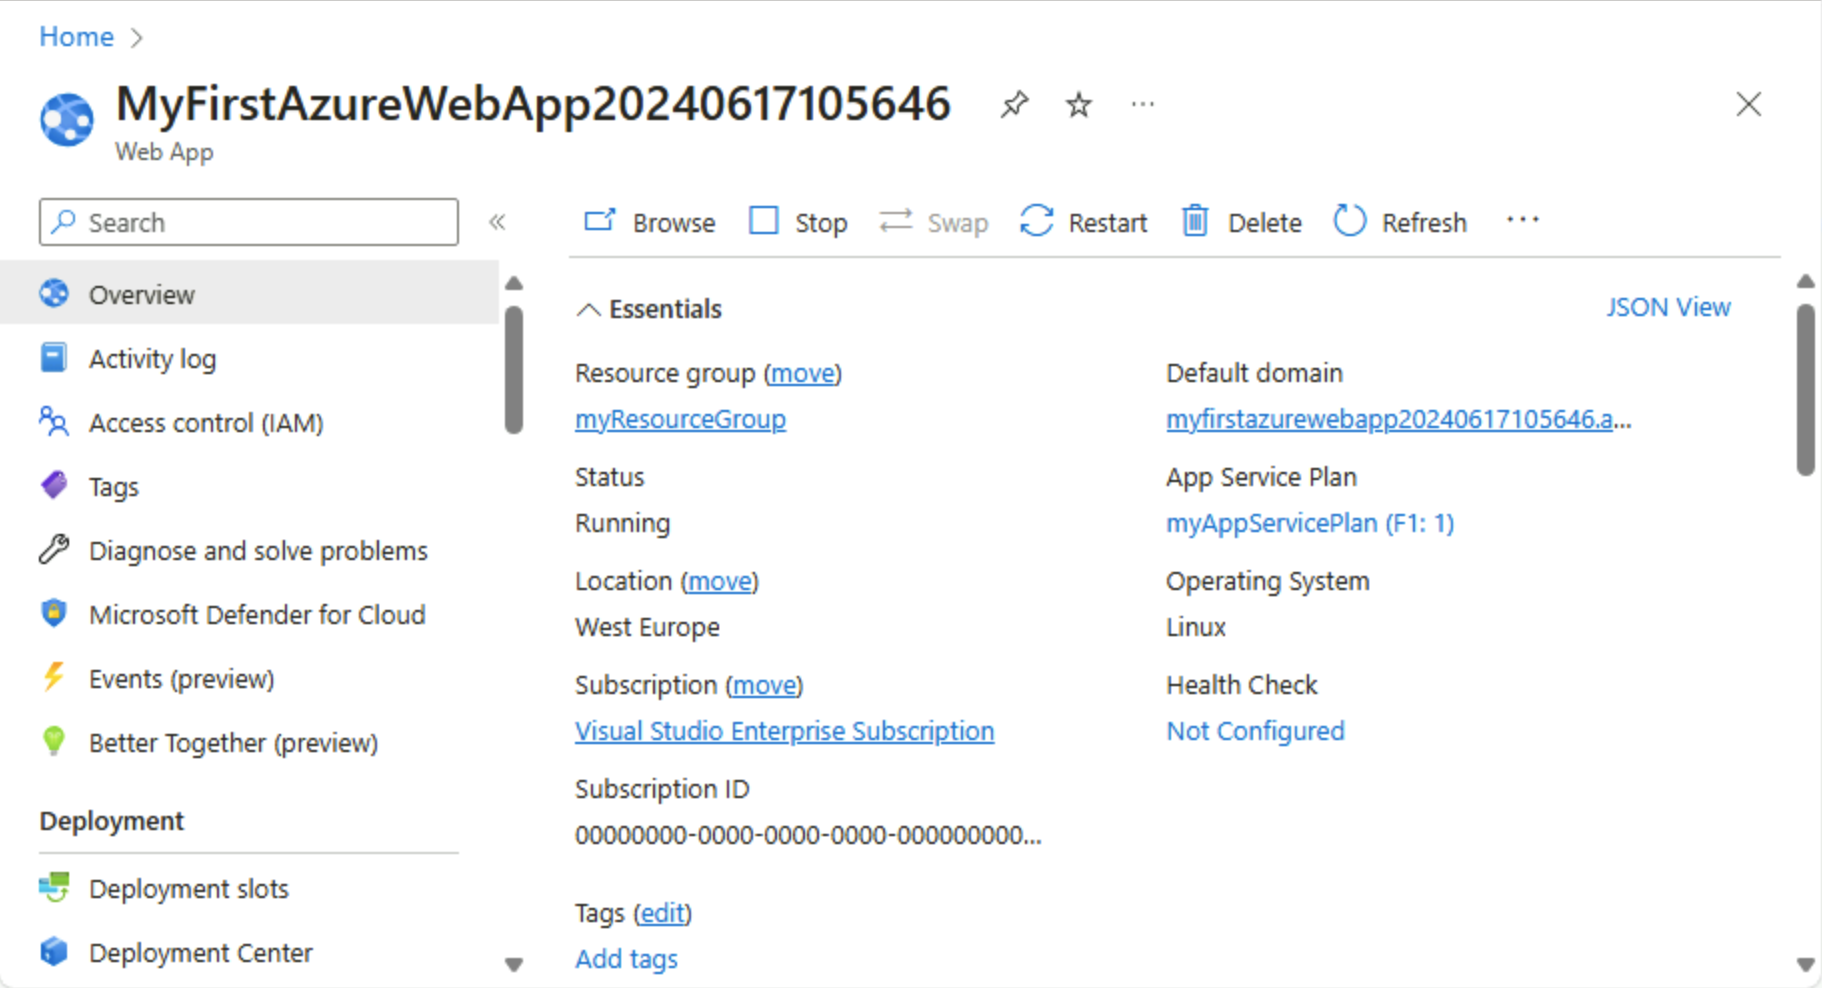 Captura de ecrã do portal do Azure - página de descrição geral do Serviço de Aplicações.